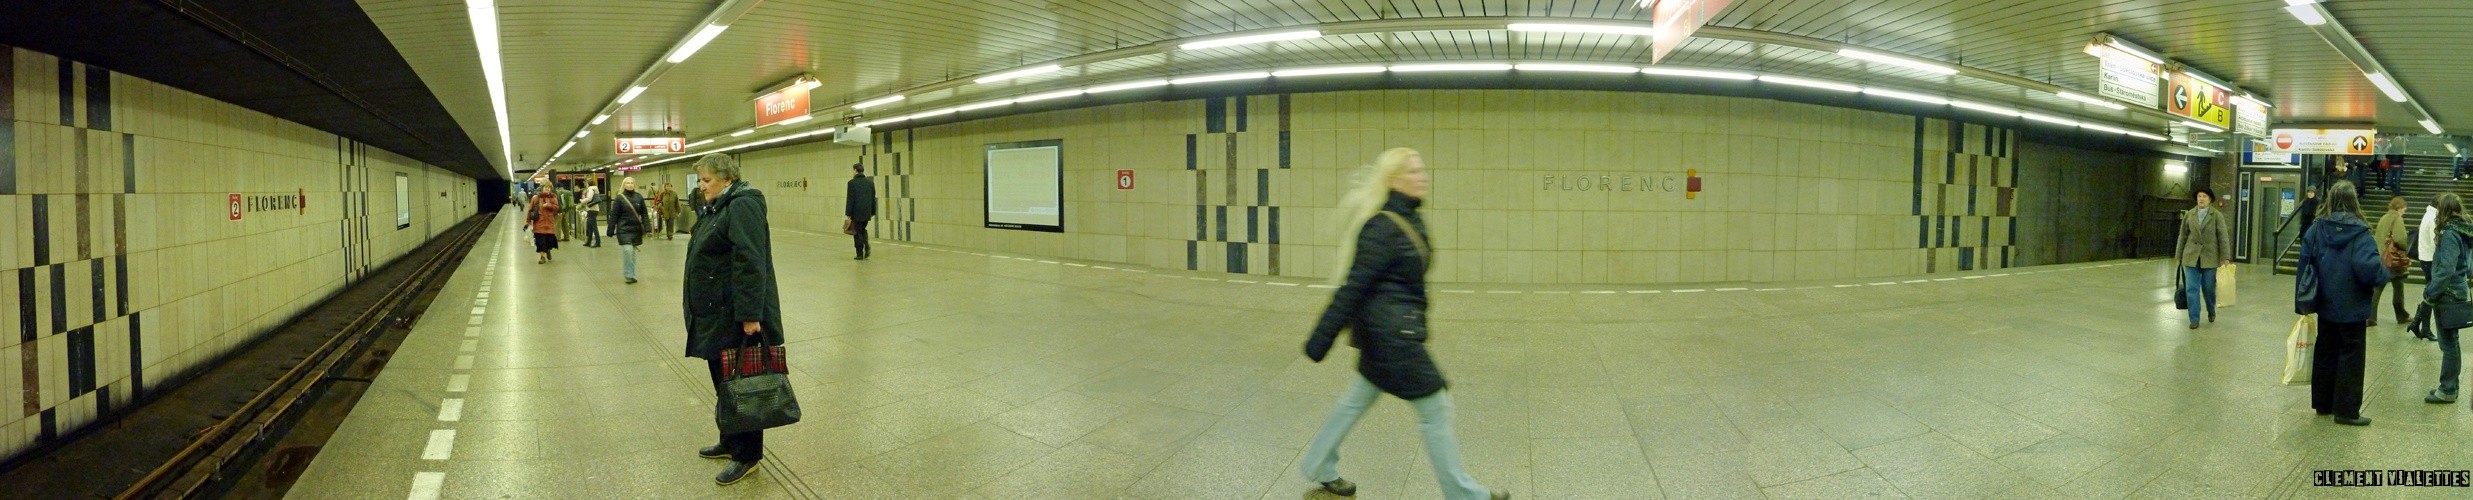 2010-03-prague-transports-metro-florenc.jpg